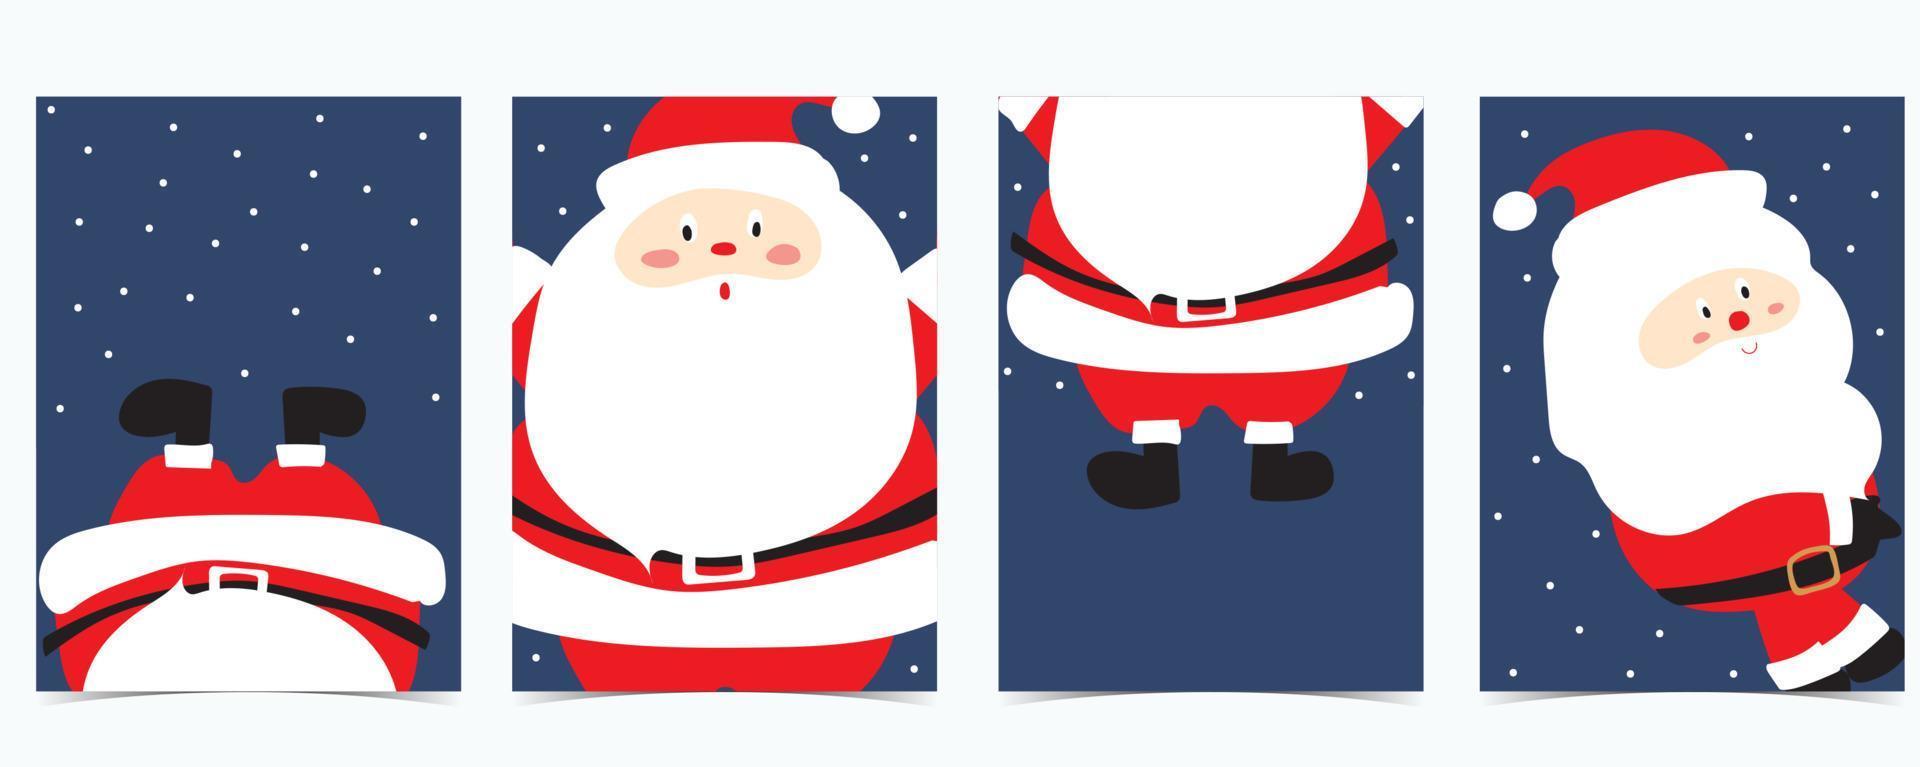 süße weihnachtskollektion mit santa claus.vector illustration für poster, postkarte, banner, cover vektor